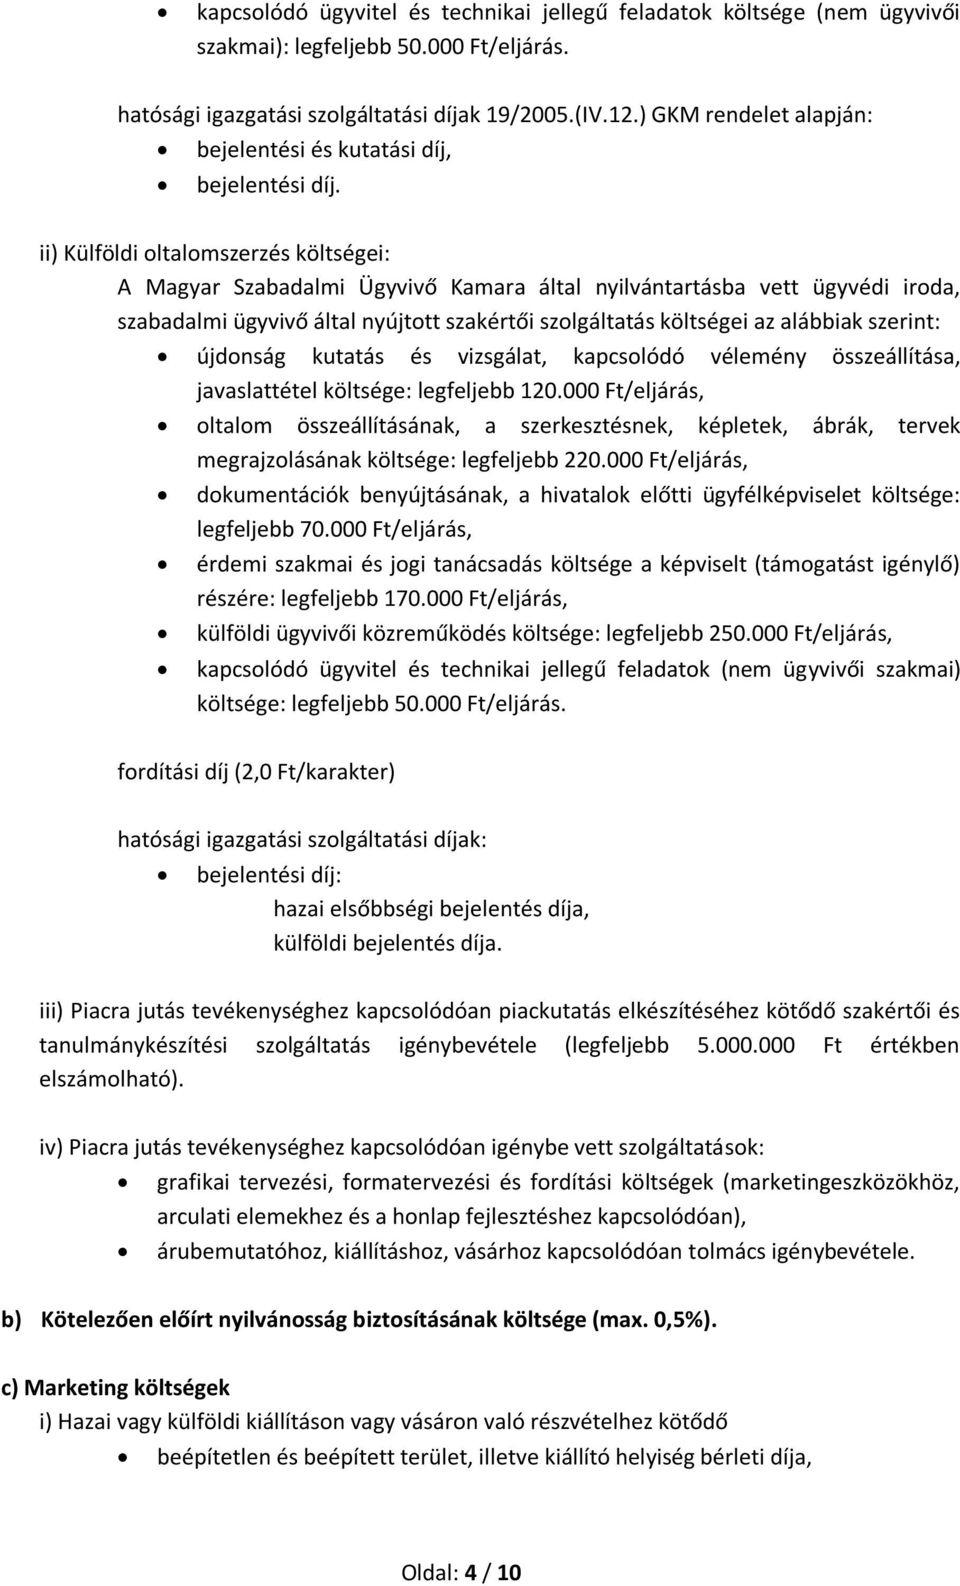 ii) Külföldi oltalomszerzés költségei: A Magyar Szabadalmi Ügyvivő Kamara által nyilvántartásba vett ügyvédi iroda, szabadalmi ügyvivő által nyújtott szakértői szolgáltatás költségei az alábbiak